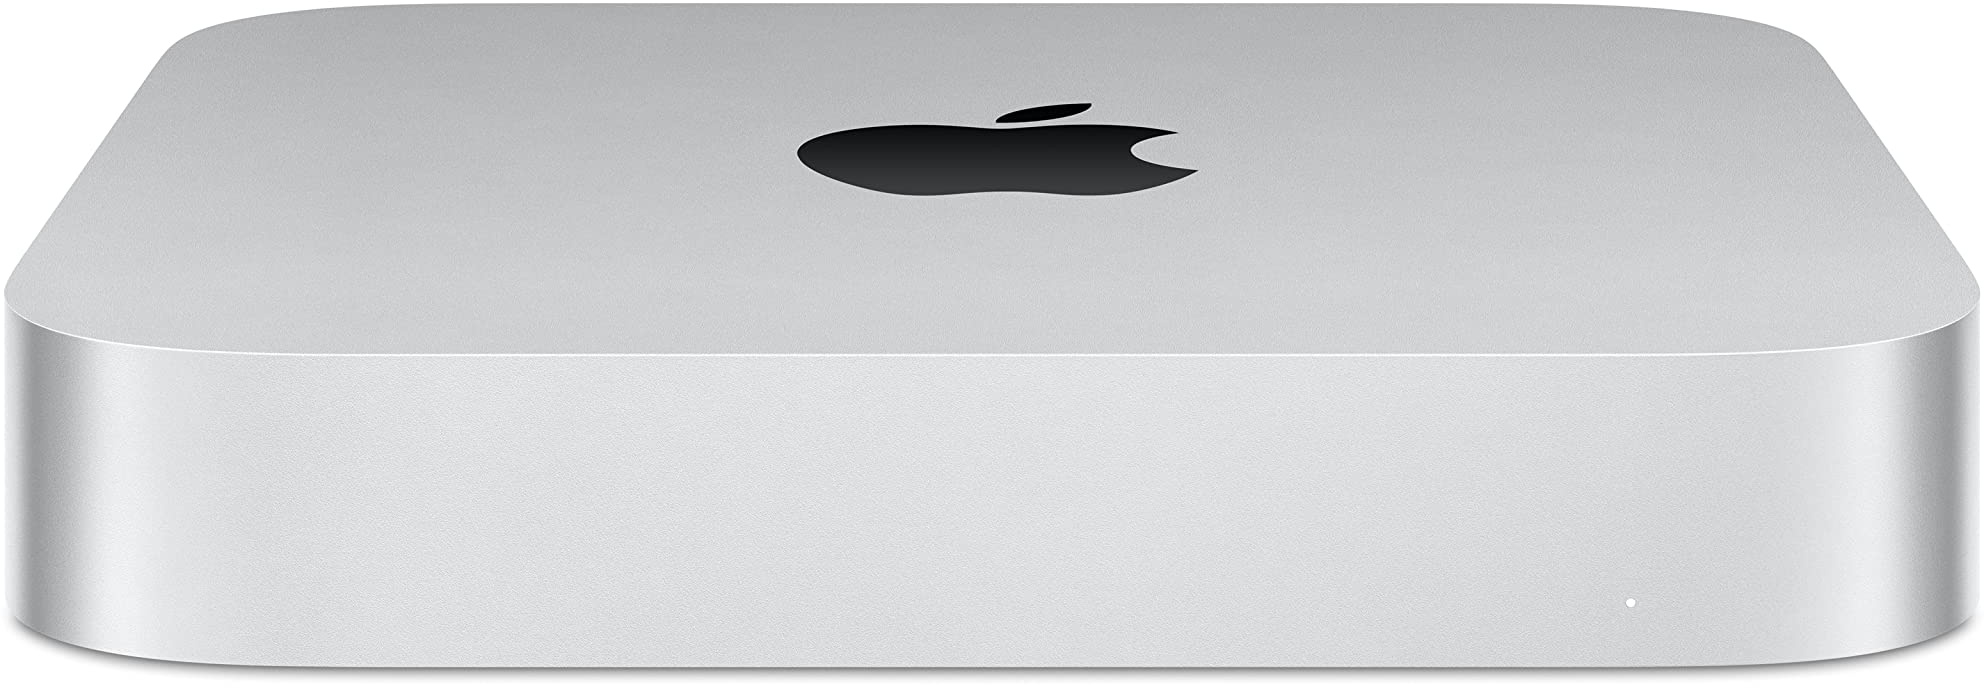 Apple 2023 Mac Mini Desktopcomputer mit M2 Pro Chip, 16 GB RAM, 512 GB SSD Speicher, Gigabit Ethernet. Funktioniert mit iPhone/iPad